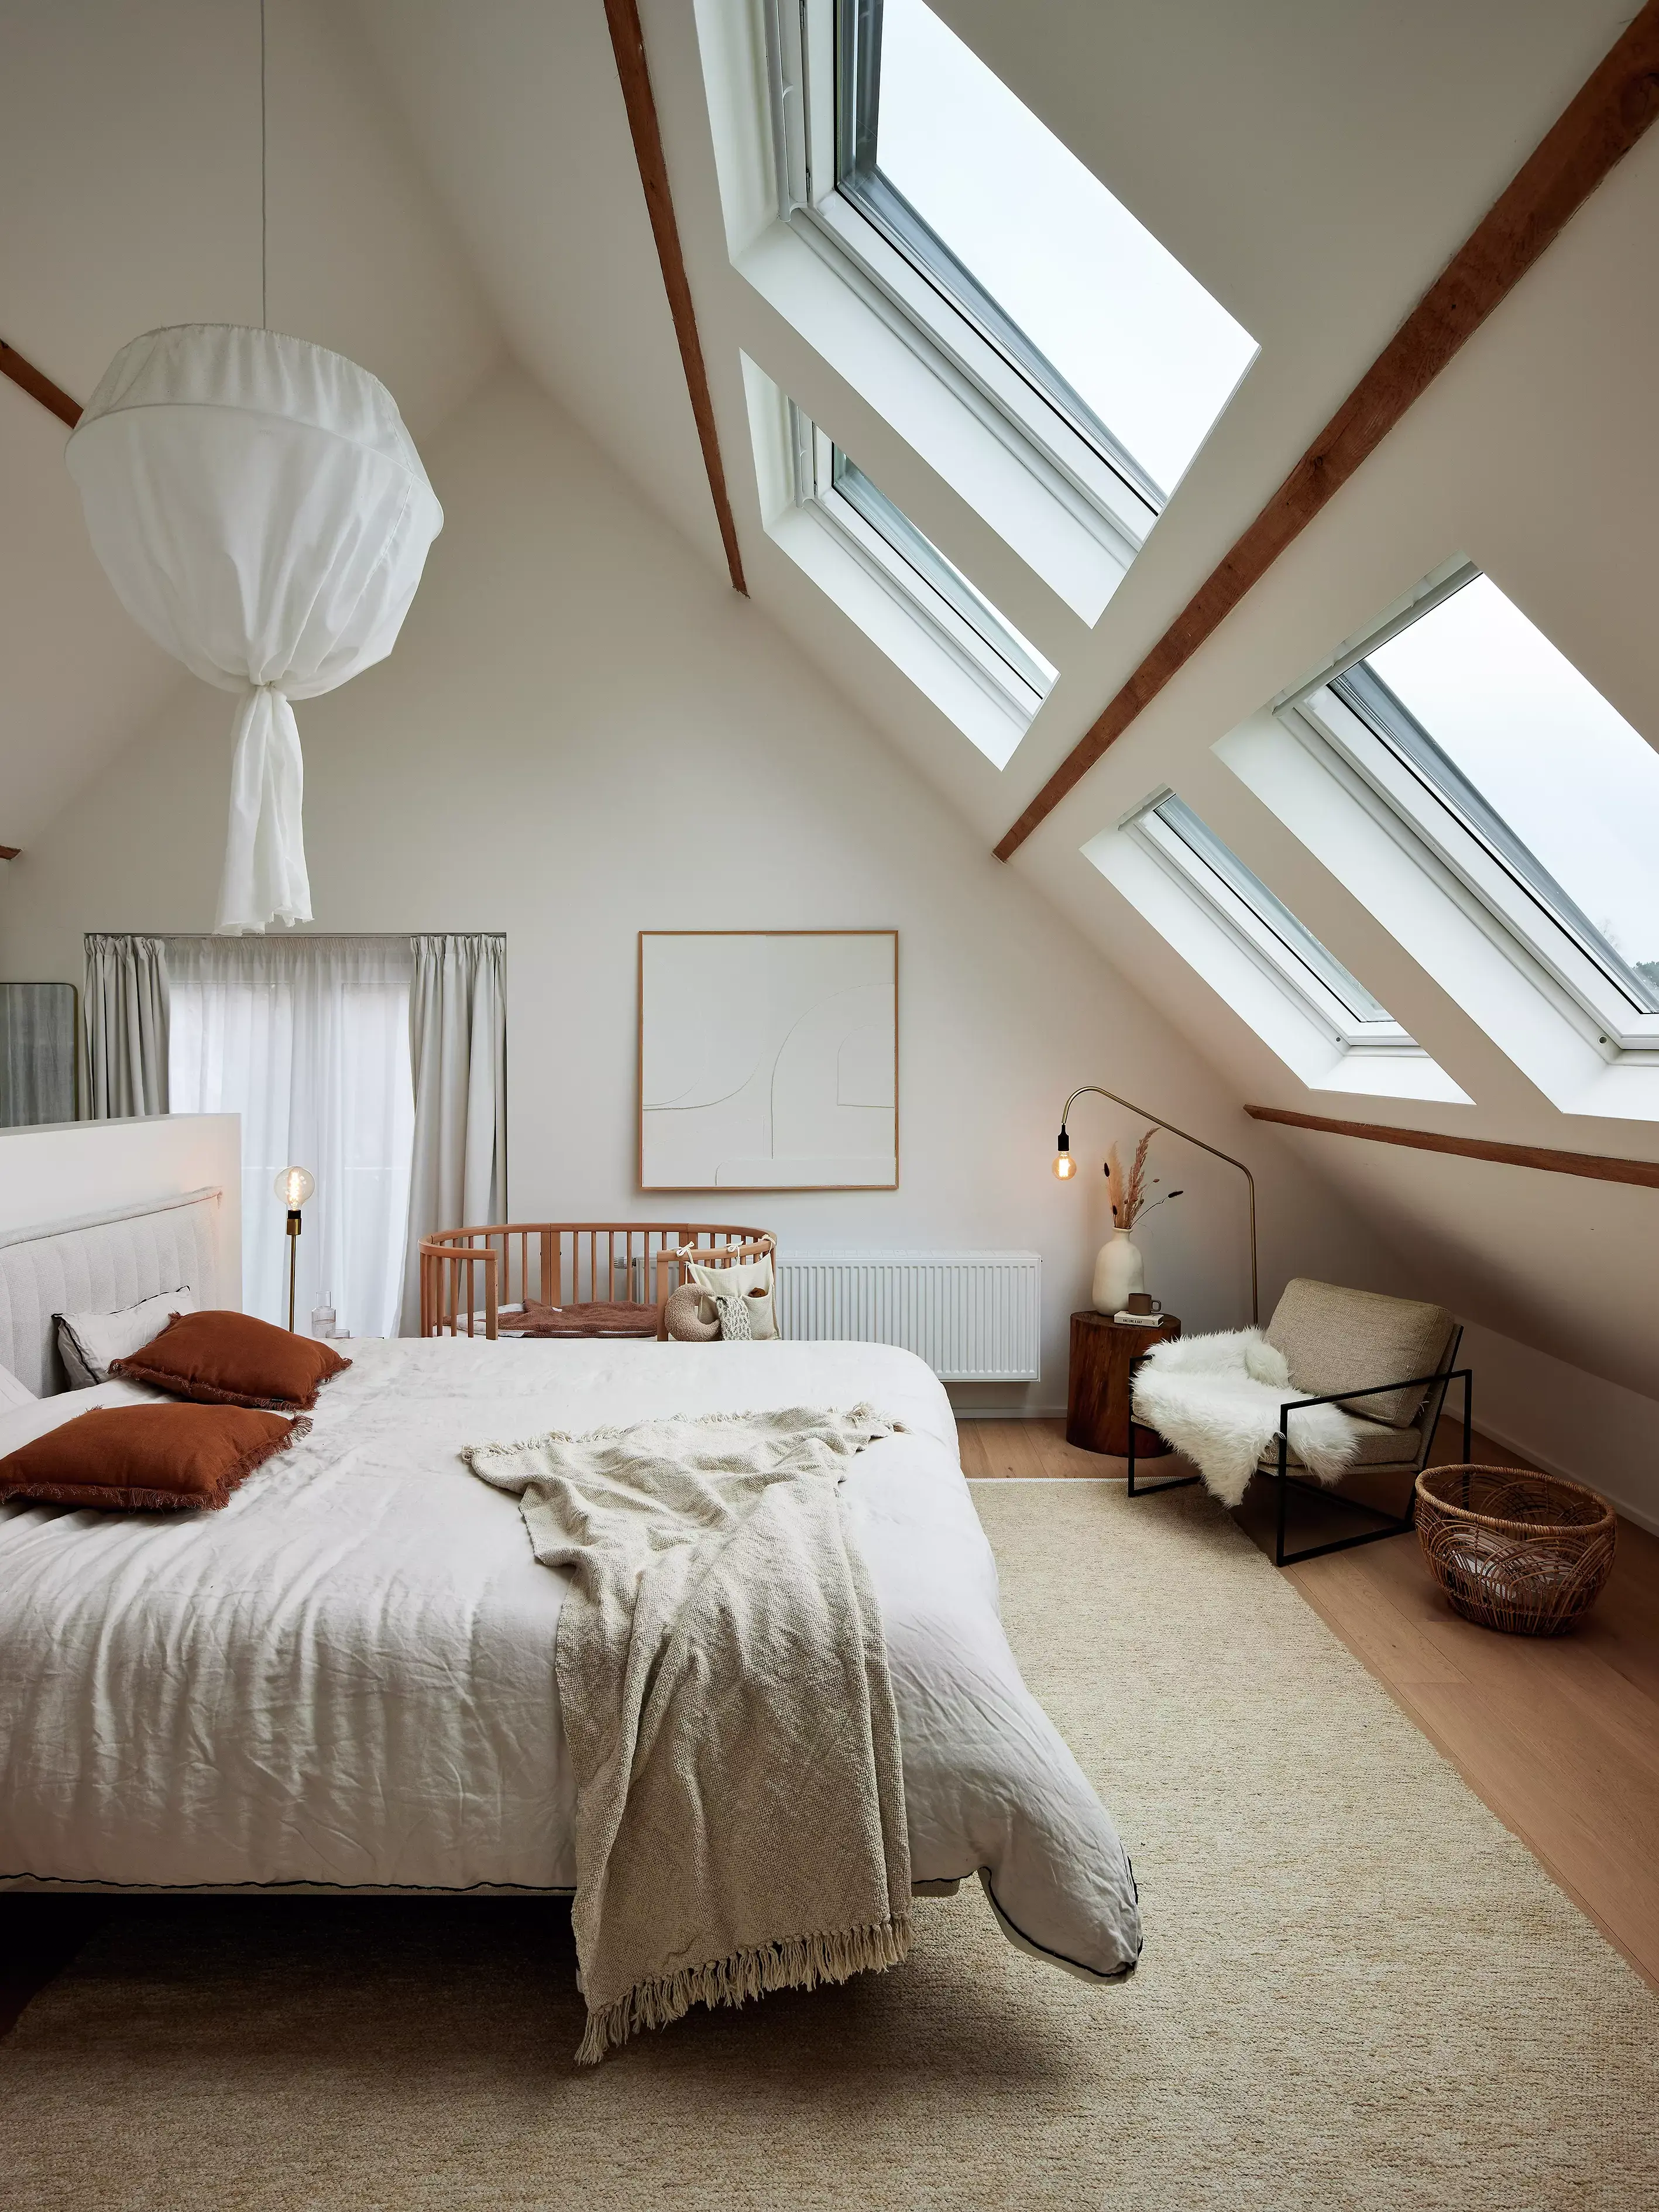 Ampia camera da letto mansarda con finestre per tetti VELUX, travi in legno e arredamento accogliente.